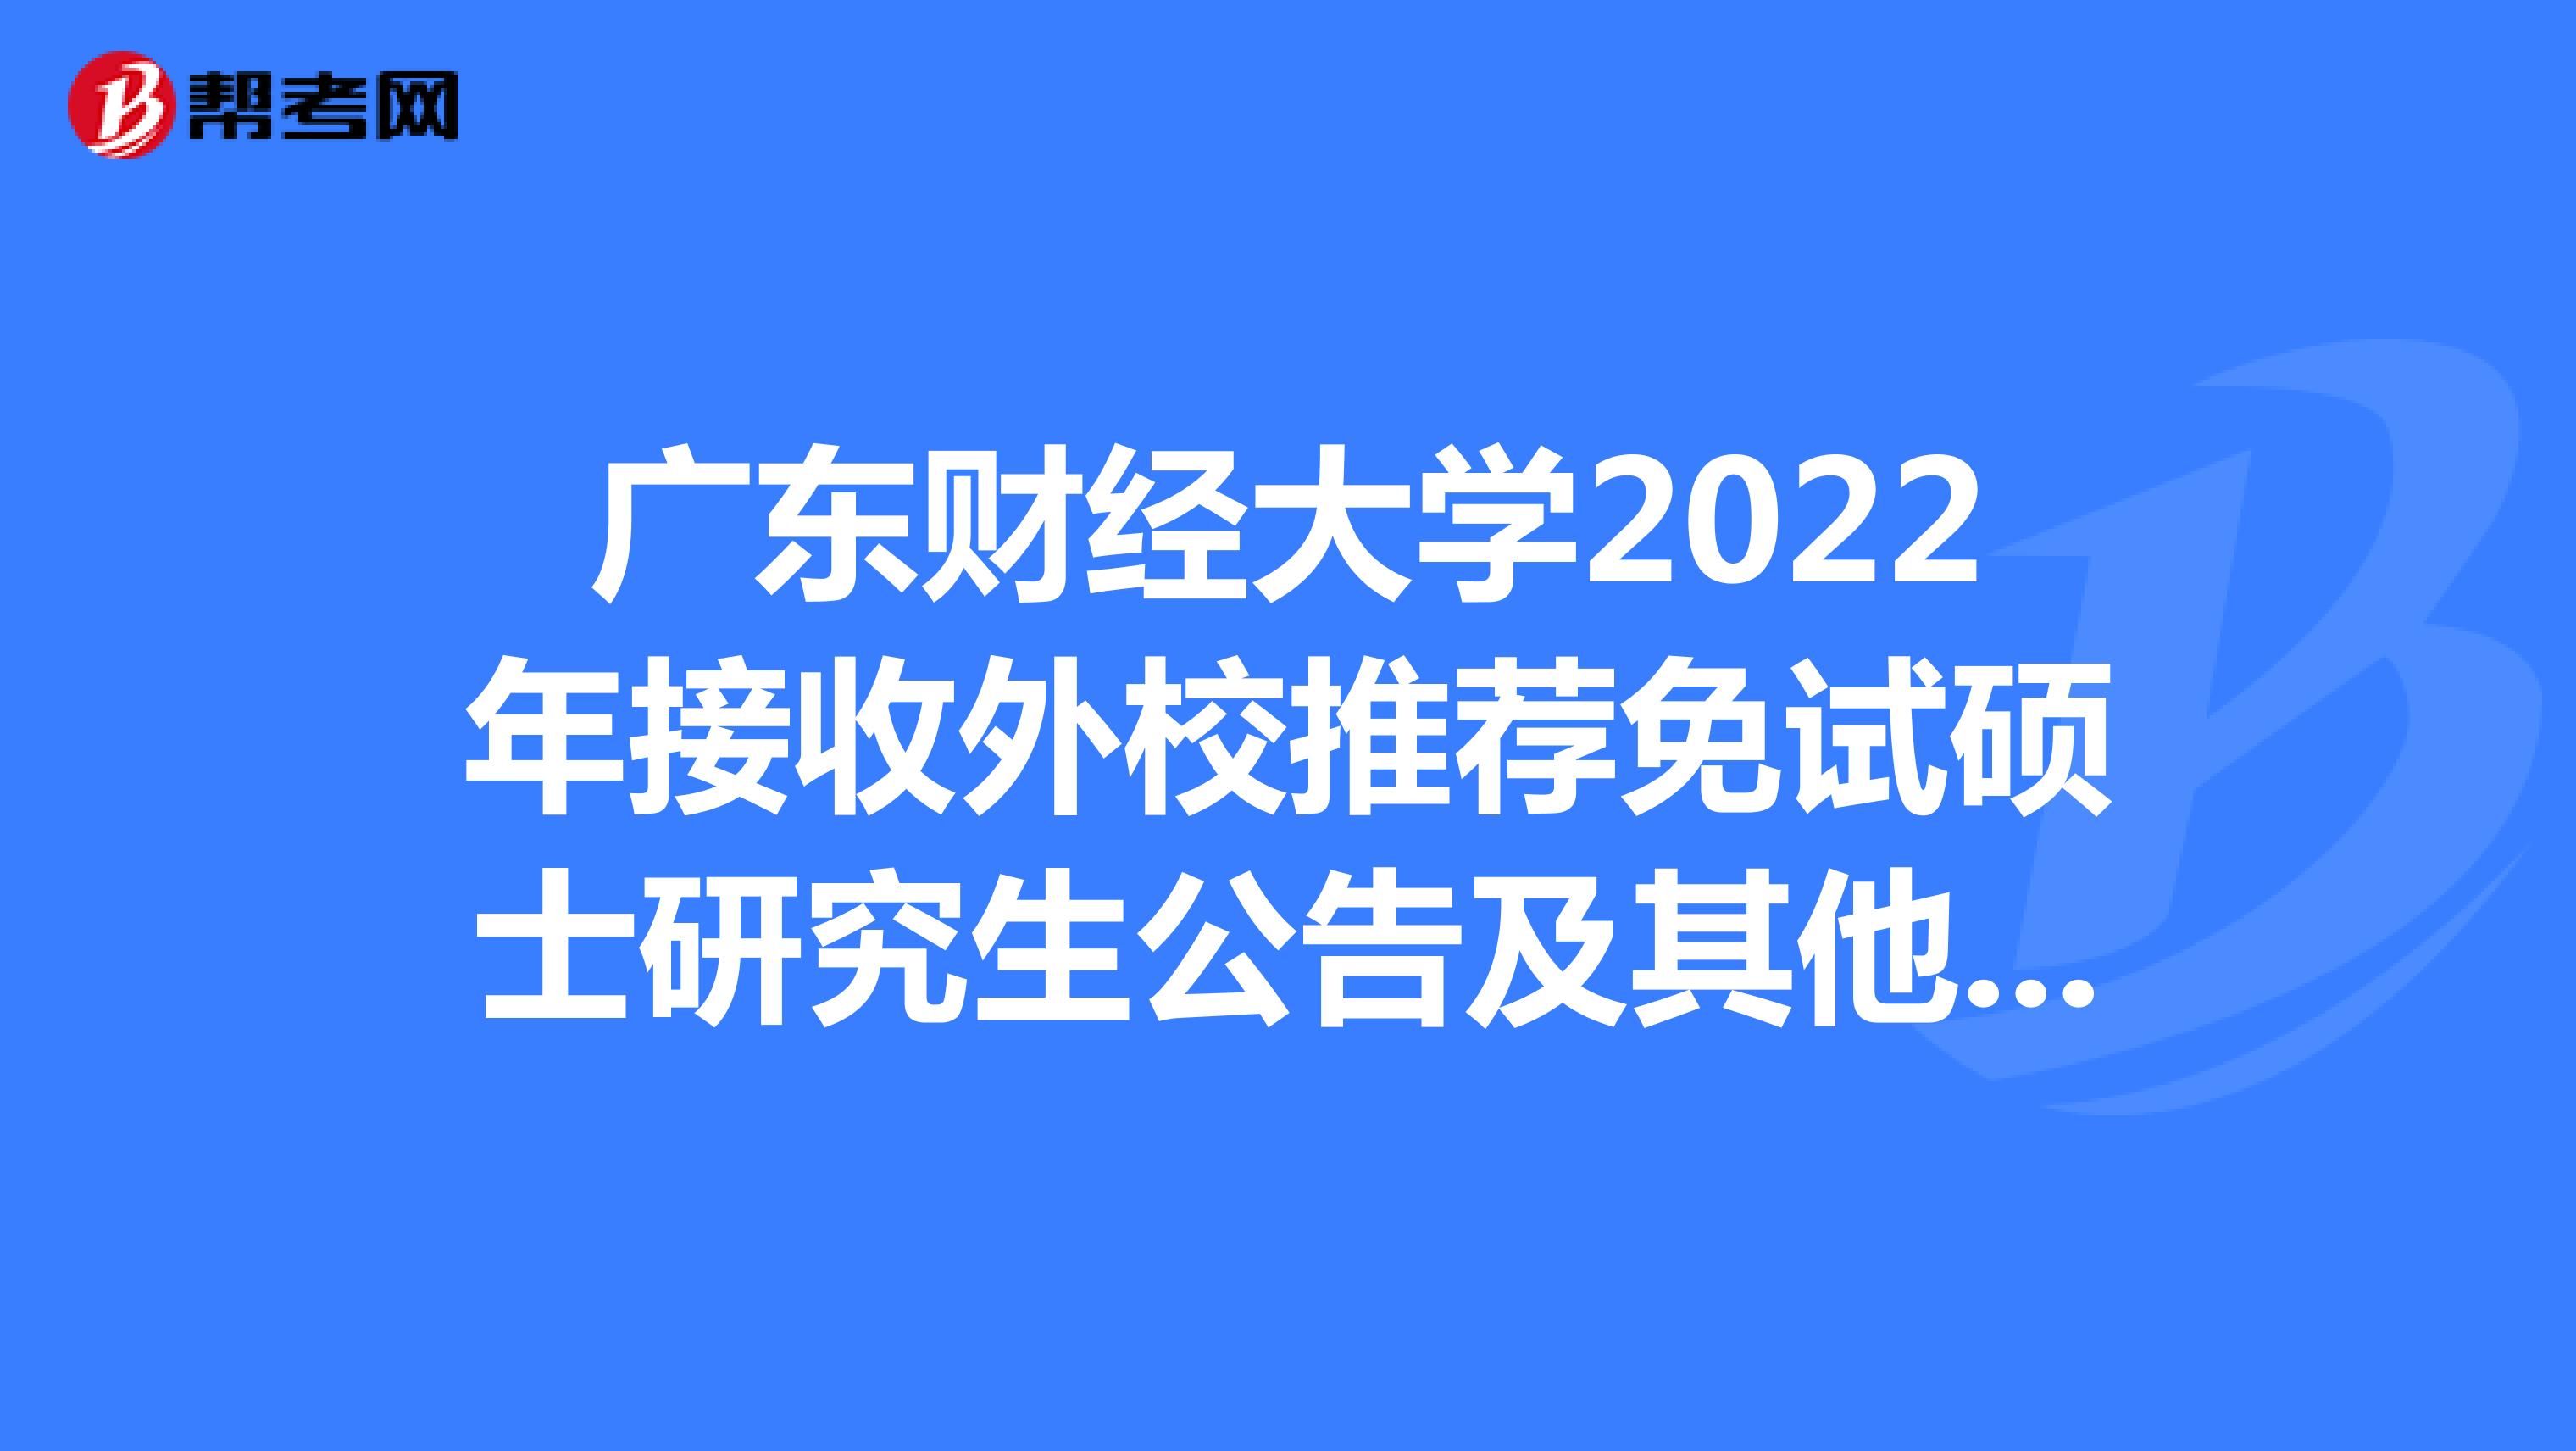 广东财经大学2022年接收外校推荐免试硕士研究生公告及其他事项！